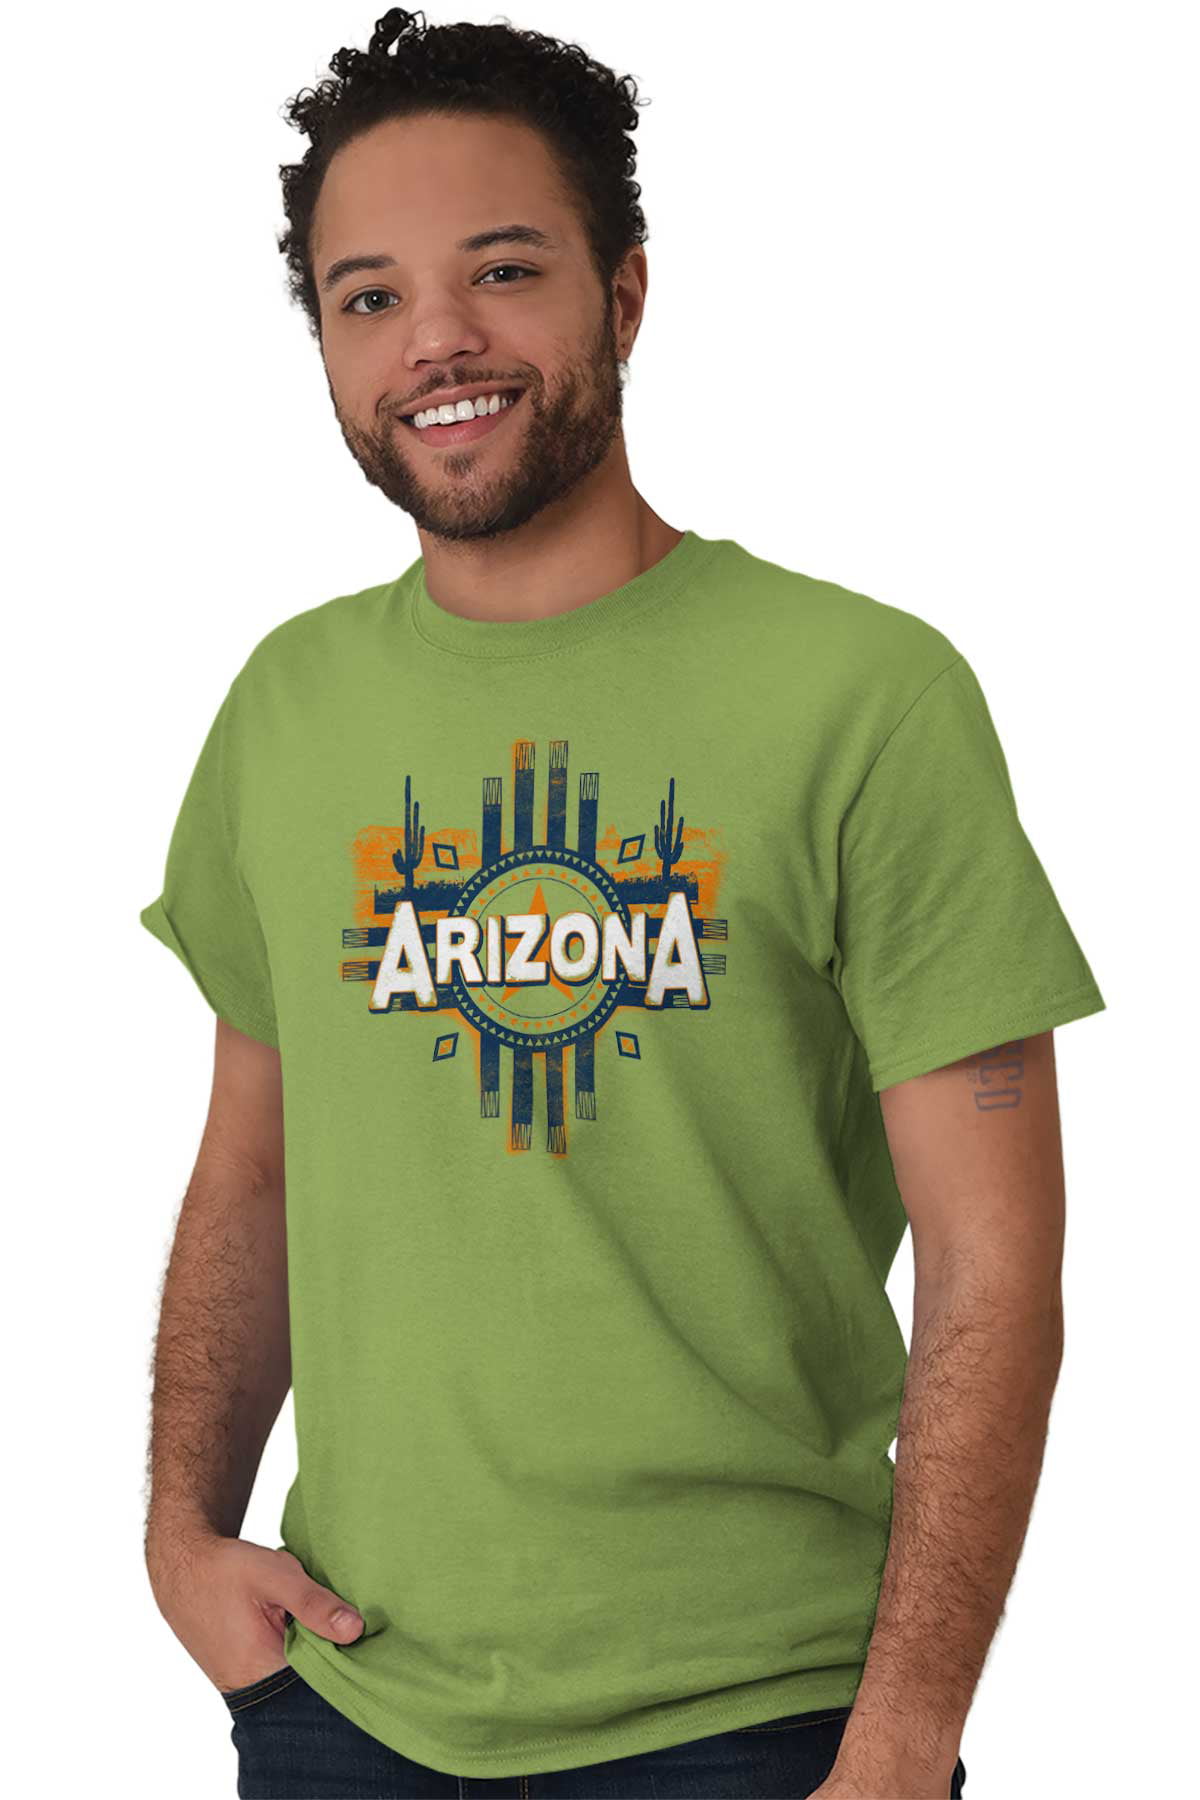 Vacation Tee Phoenix Arizona Shirt Arizona T-Shirt Arizona Desert Cactus Shirt Southwestern T-Shirt, Desert Reptiles Shirt